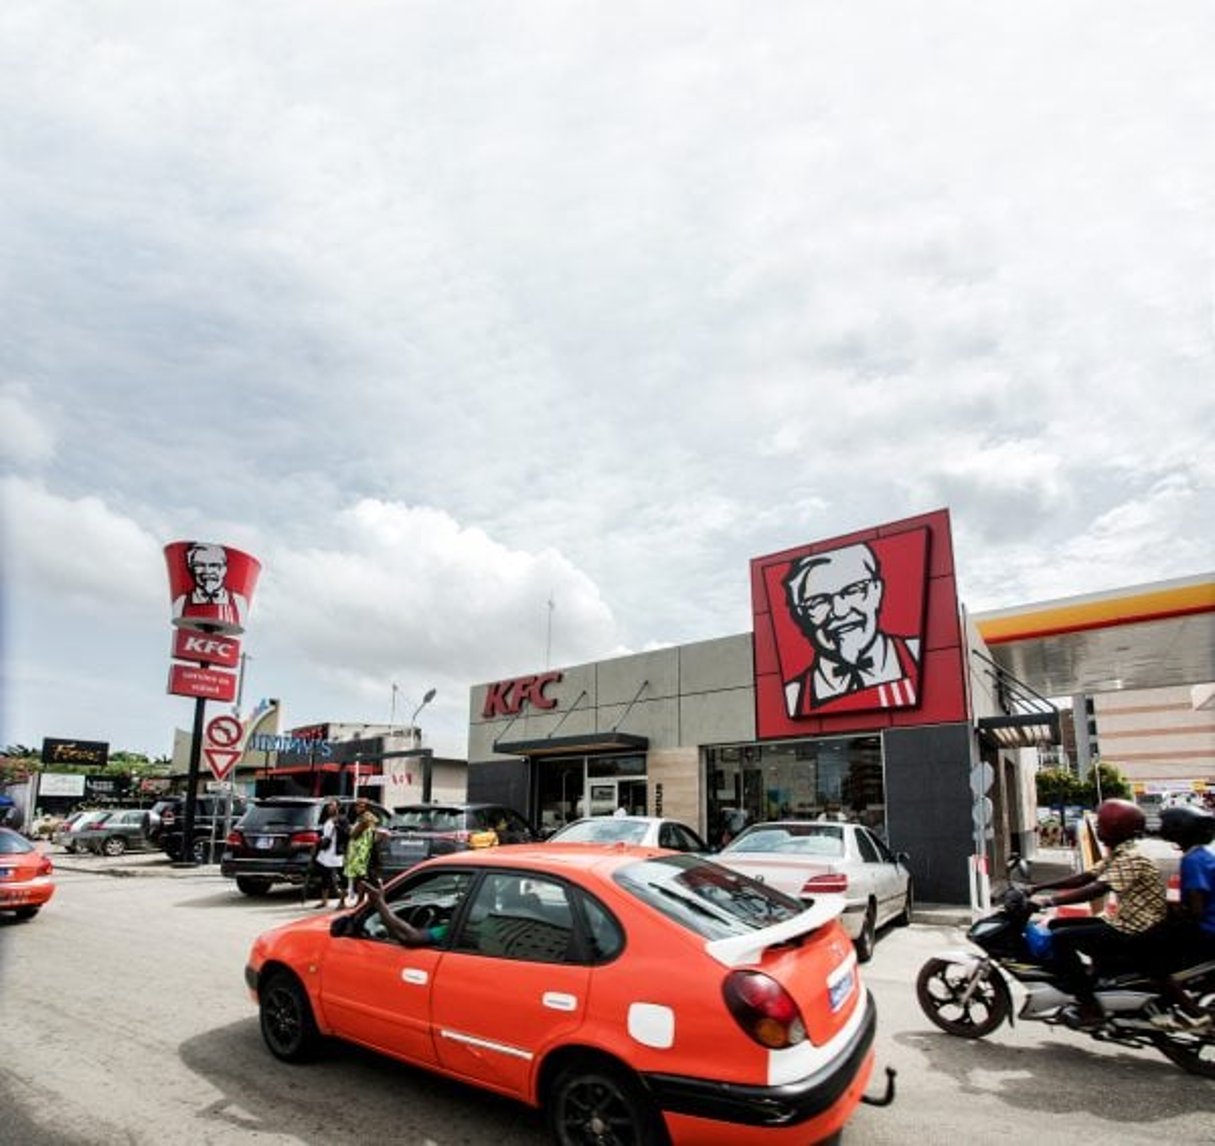 Le géant américain du fast-food KFC s’est implanté en Tunisie, en Côte d’Ivoire (ici à Abidjan) et, cette année, au Sénégal © Issam Zejly pour Jeune Afrique